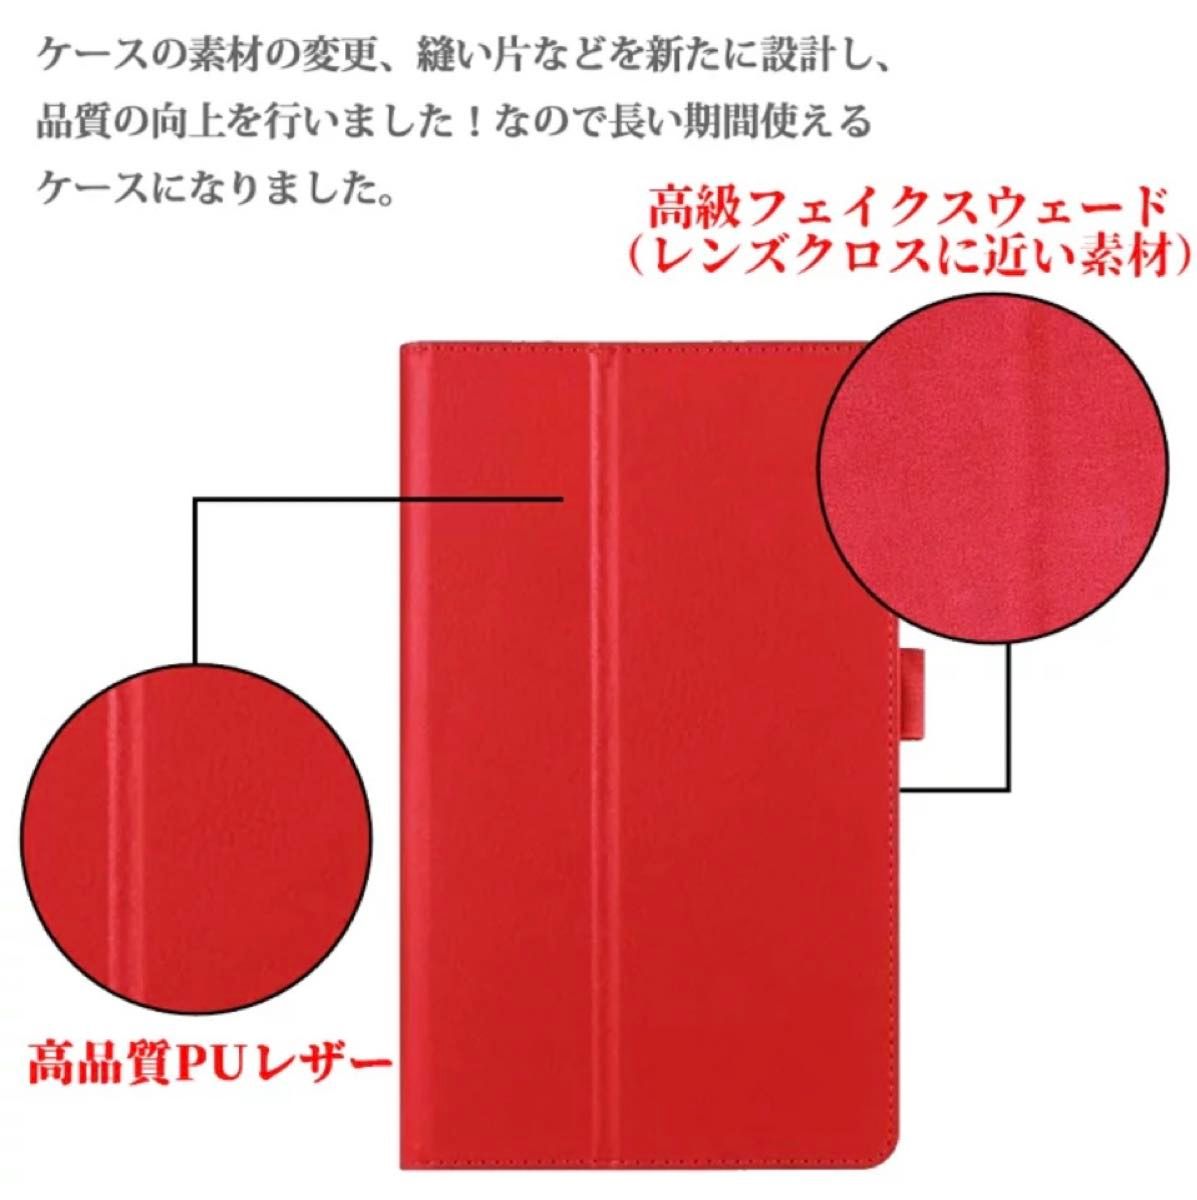 京セラ キュア タブ Qua tab 01 au 8インチタブレットカバー